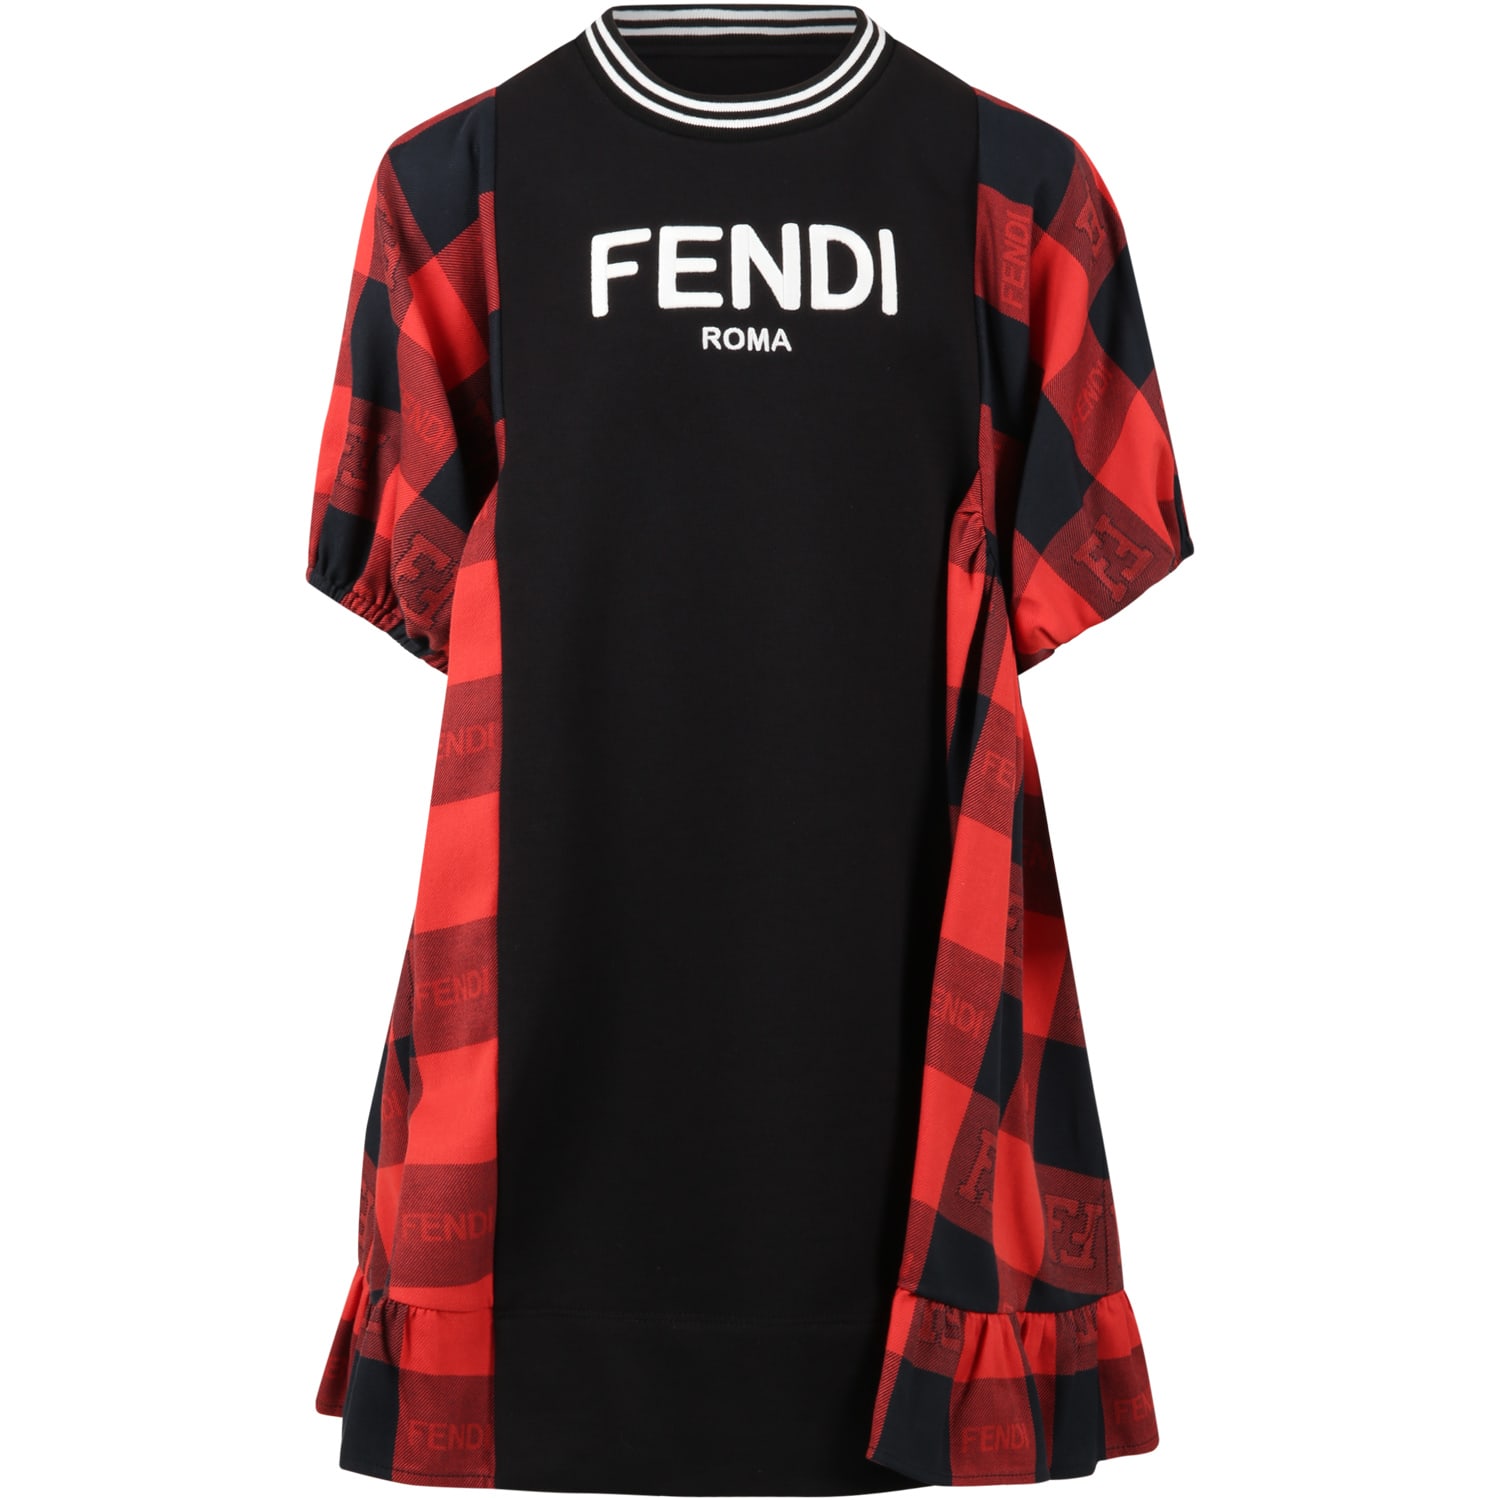 Fendi Black Dress For Girl With White Logo